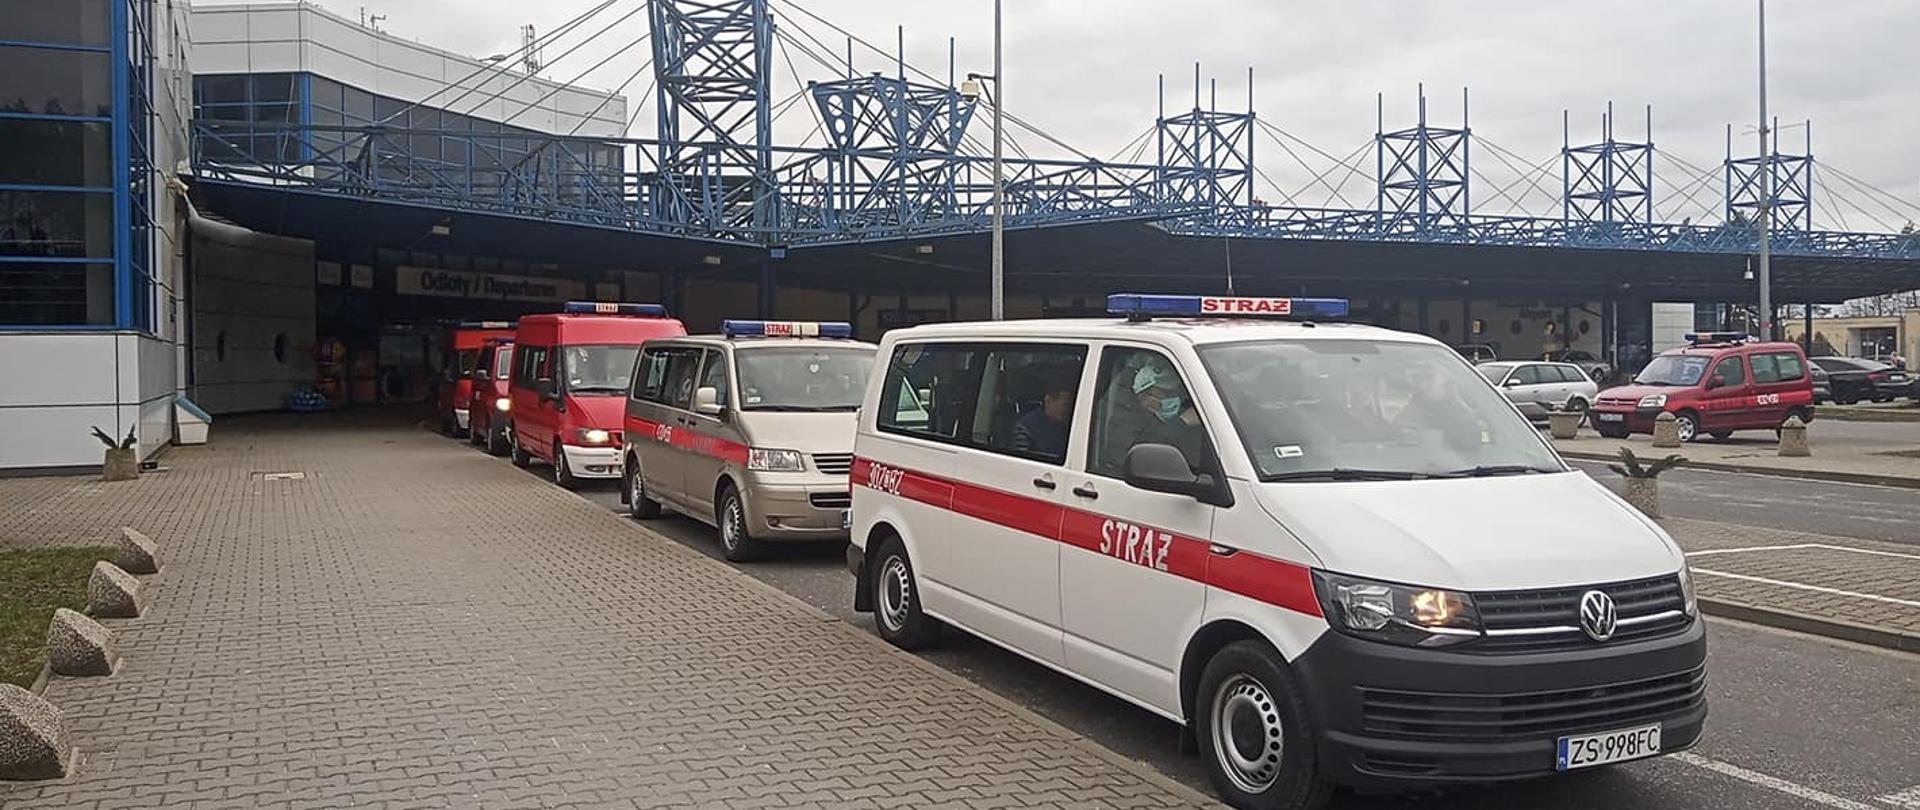 Busy Państwowej Straży Pożarnej ustawione na lotinsku Goleniów w celu transportu obywateli Ukrainy do punktu recepcyjnego. Widoczne 6 samochodów, w tle lotnisko goleniów.